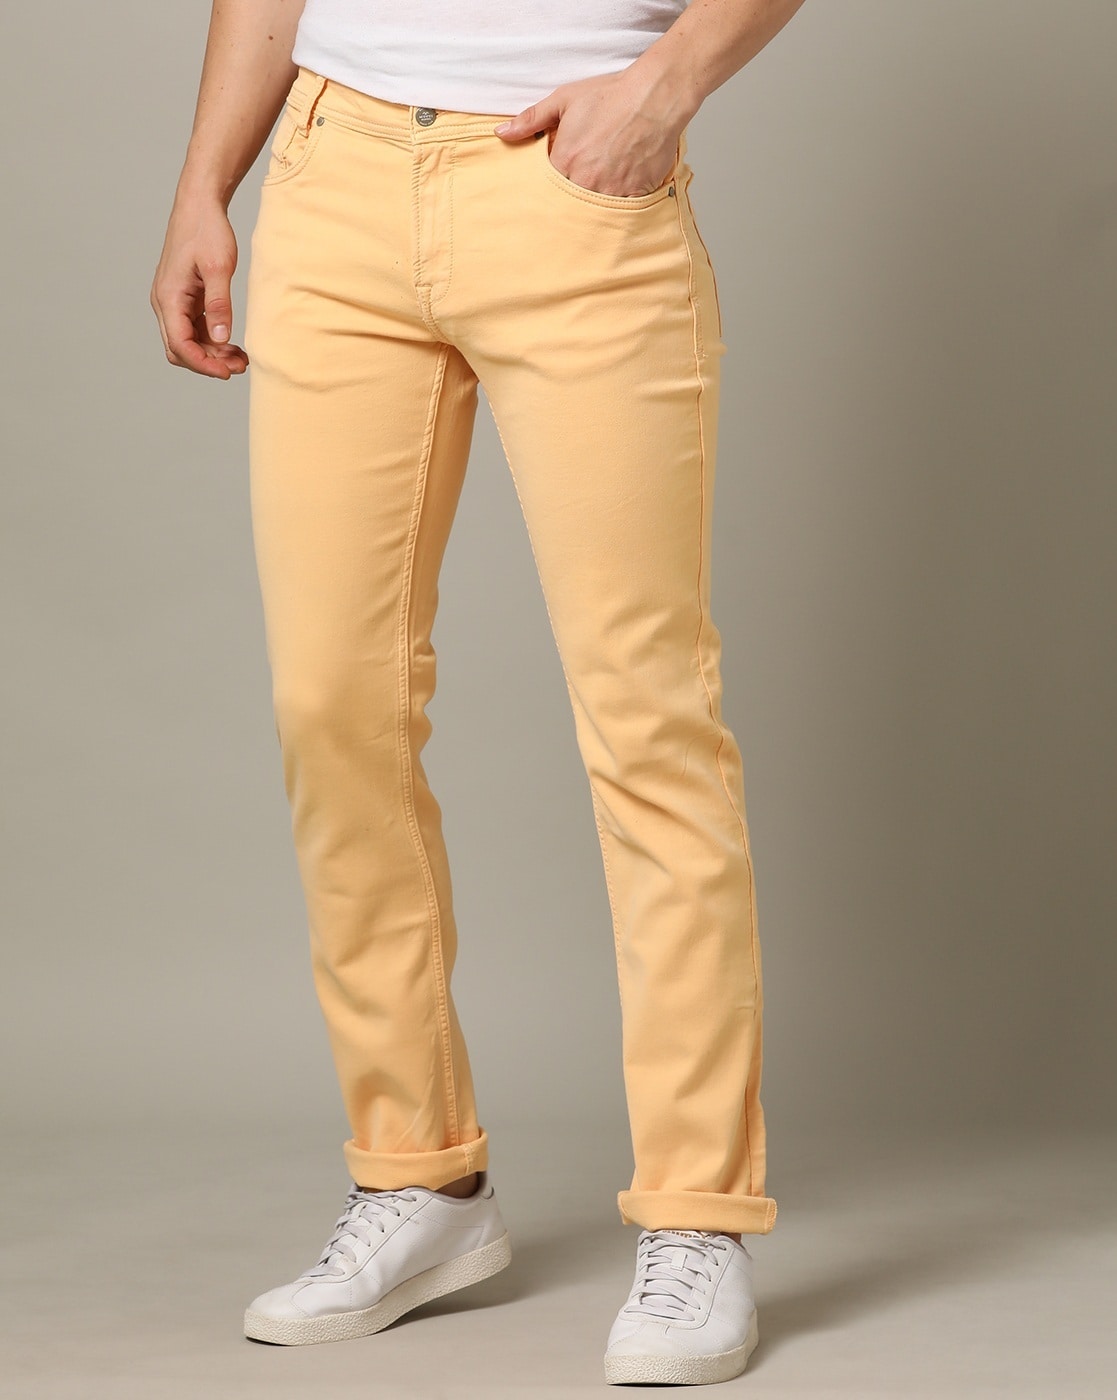 Buy Mufti Men's Super Slim Casual Trousers  (MFT-16950-K-11-BROWN-38_Brown_38) at Amazon.in